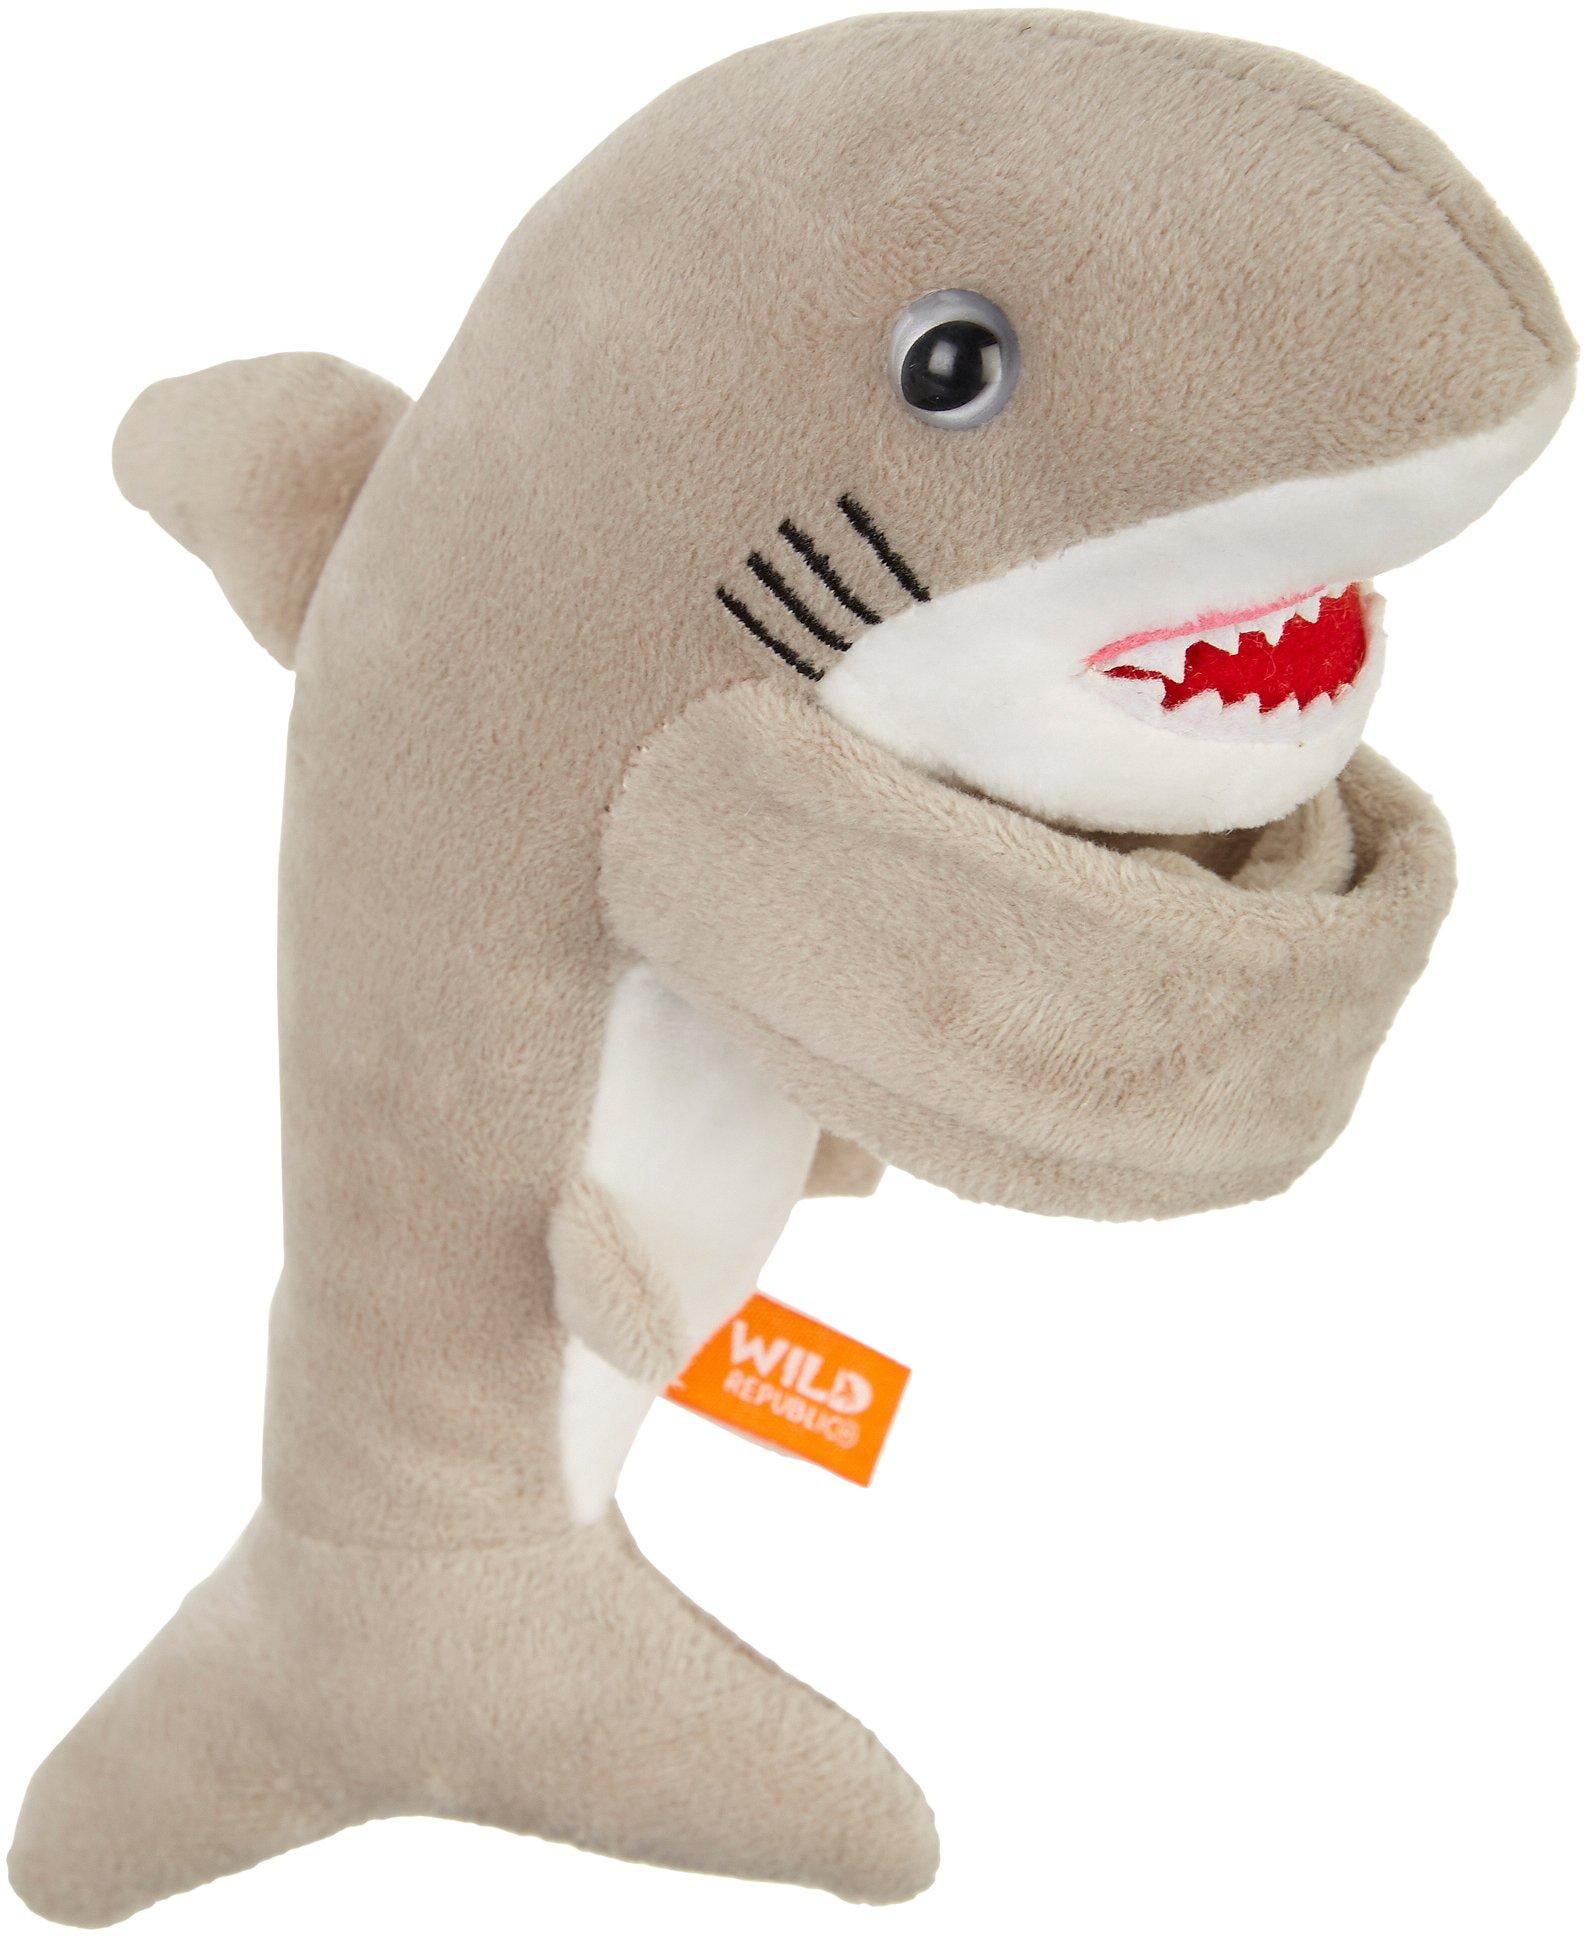 Great White Shark Hugger Slap Bracelet Animal - Stuffed Animal by Wild  Republic 